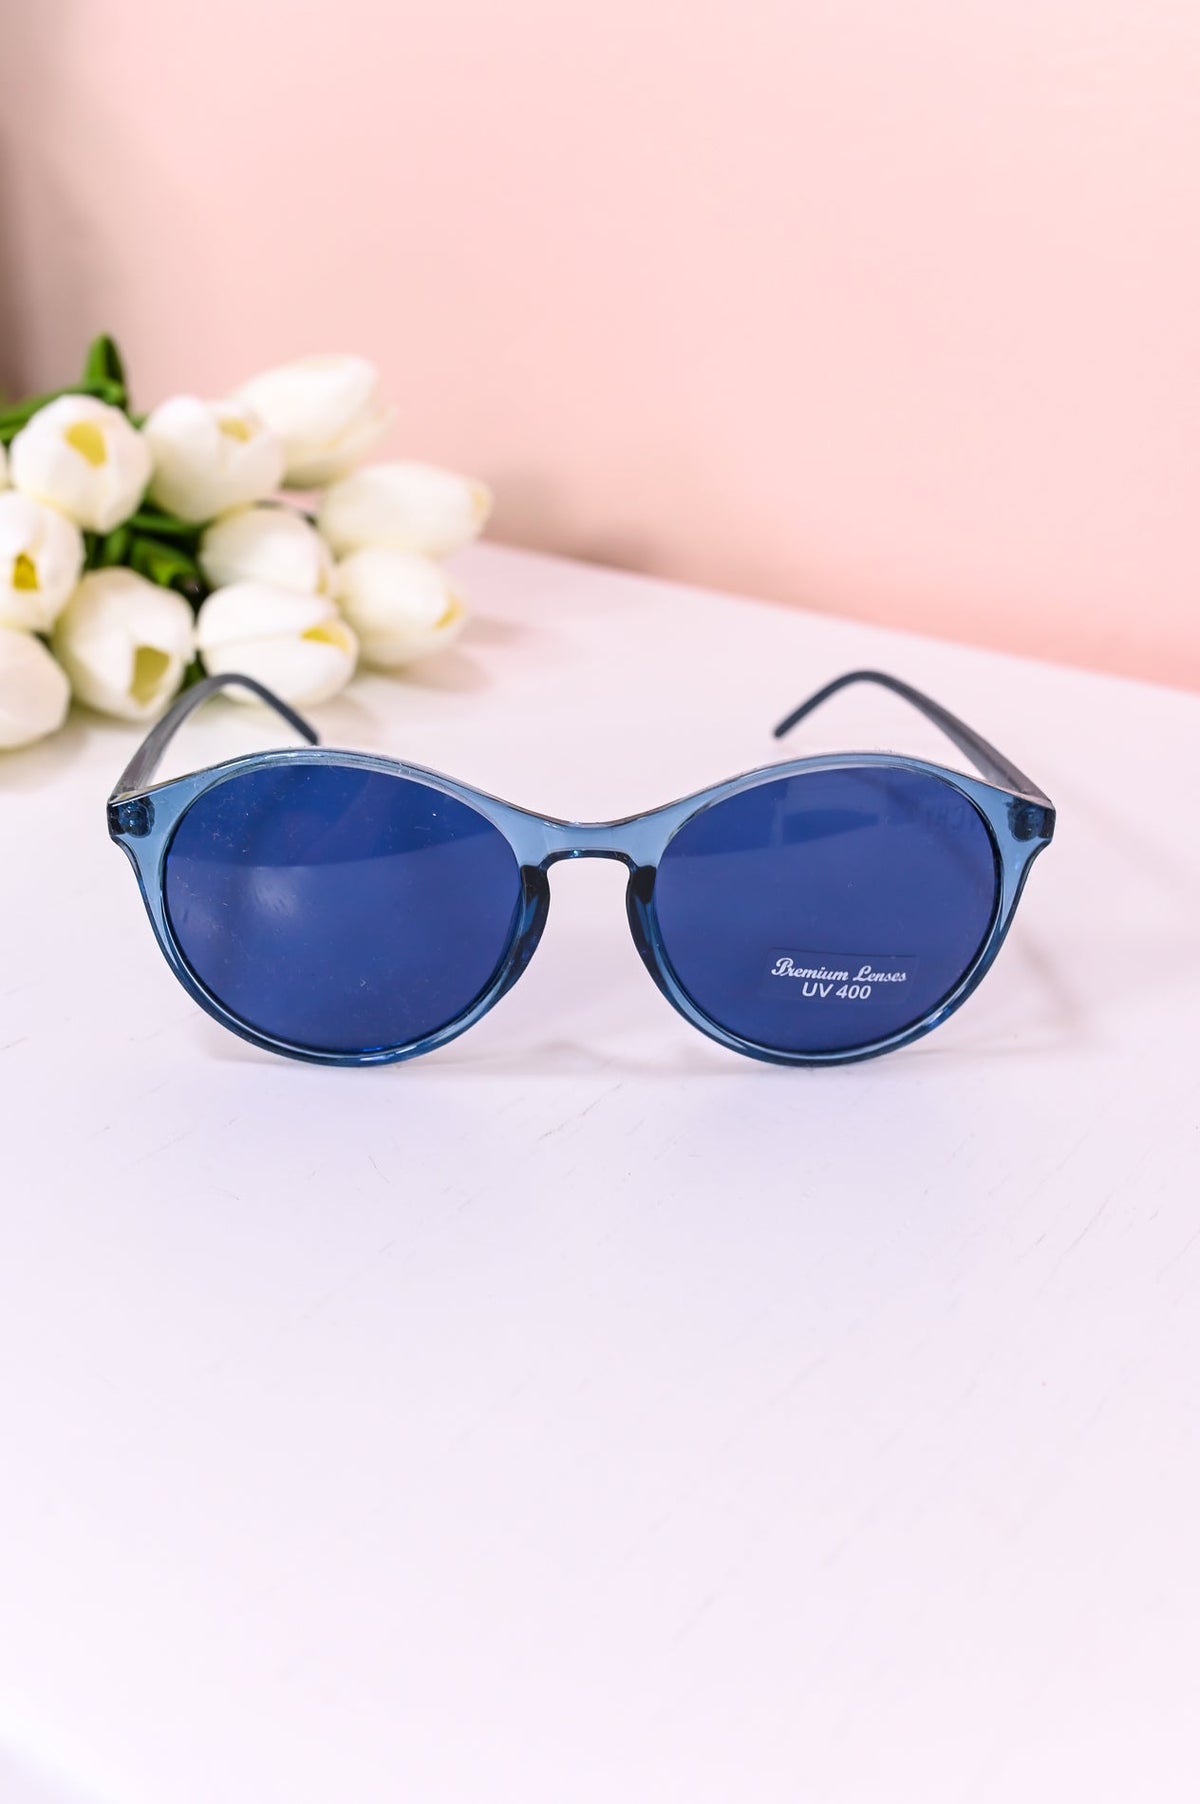 Blue Frame/Blue Lens Sunglasses - SGL321BL